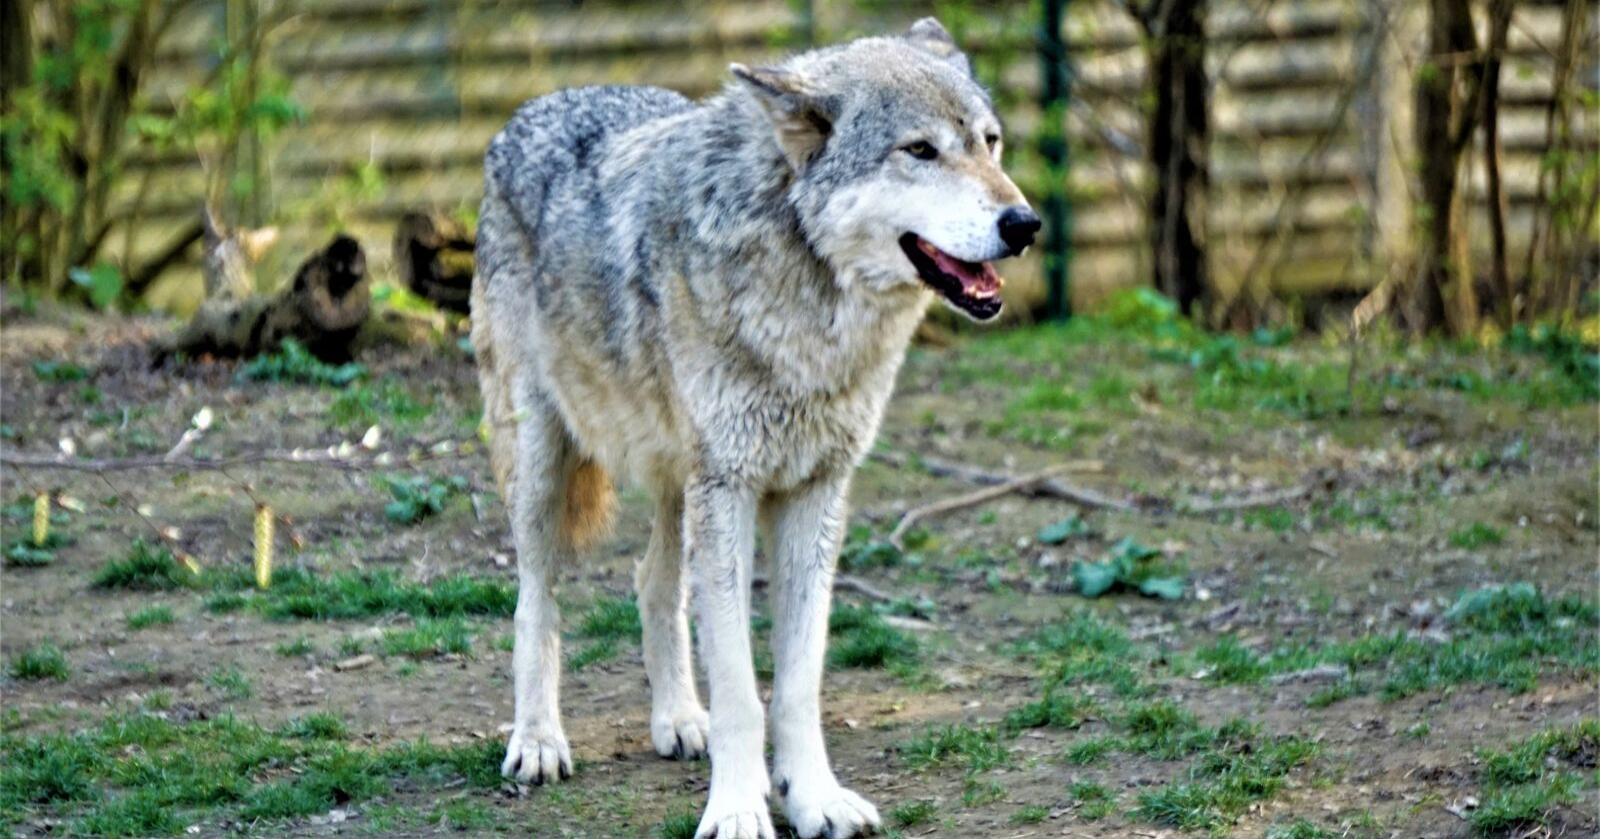 Svensk dyrepark slutter med ulver. Riksdagsvedtaket om kraftig reduksjon i ulvebestanden sies å være årsaken. Arkivfoto: Mostphoto